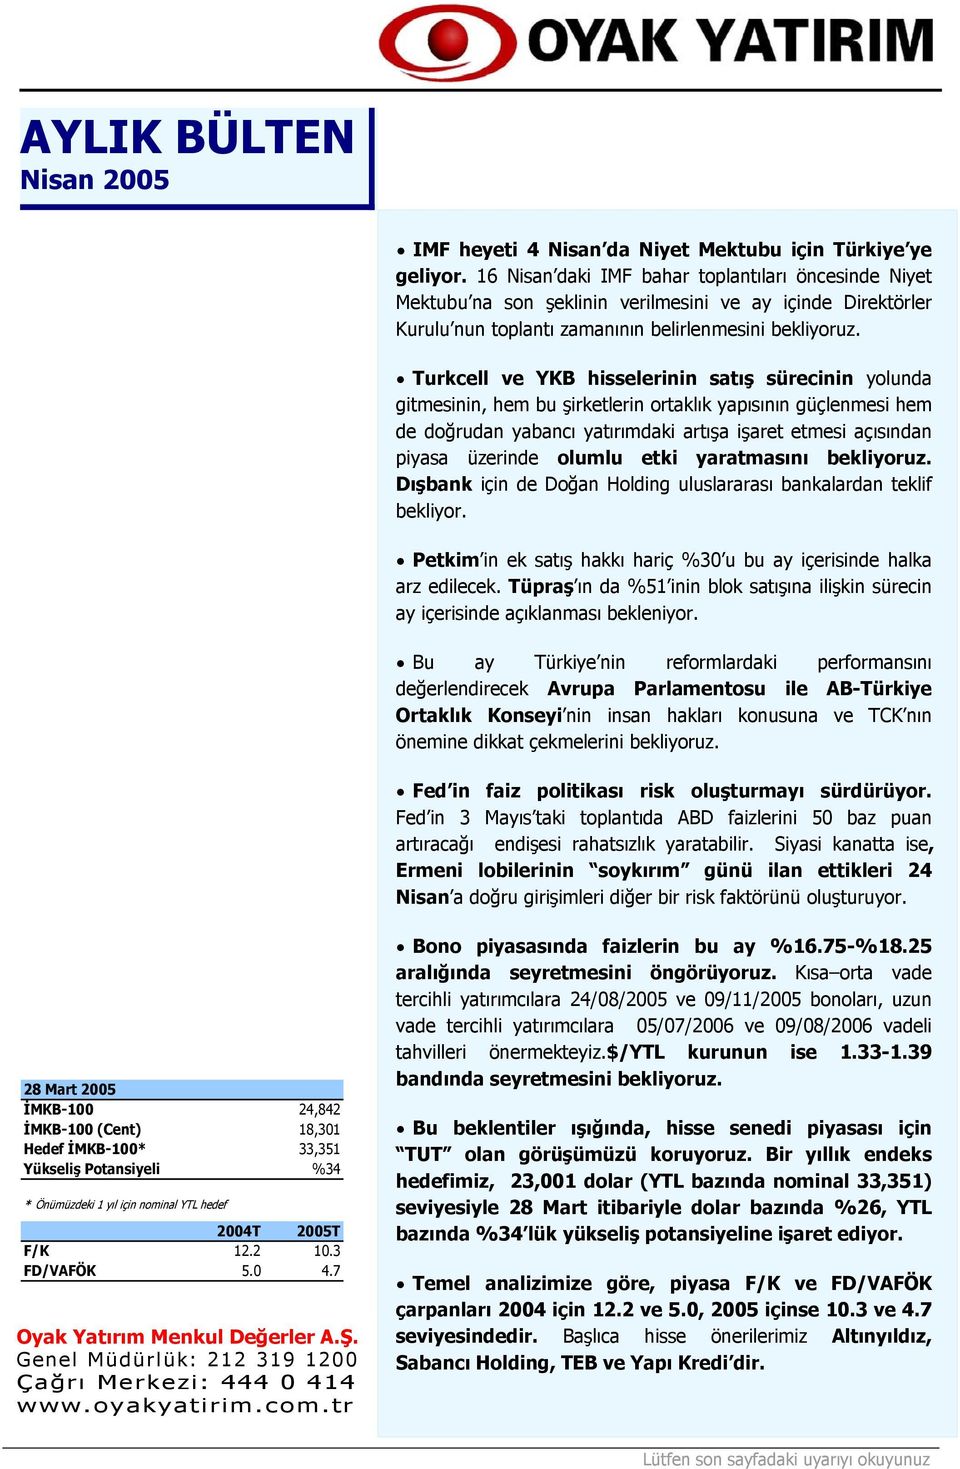 Turkcell ve YKB hisselerinin satış sürecinin yolunda gitmesinin, hem bu şirketlerin ortaklık yapısının güçlenmesi hem de doğrudan yabancı yatırımdaki artışa işaret etmesi açısından piyasa üzerinde